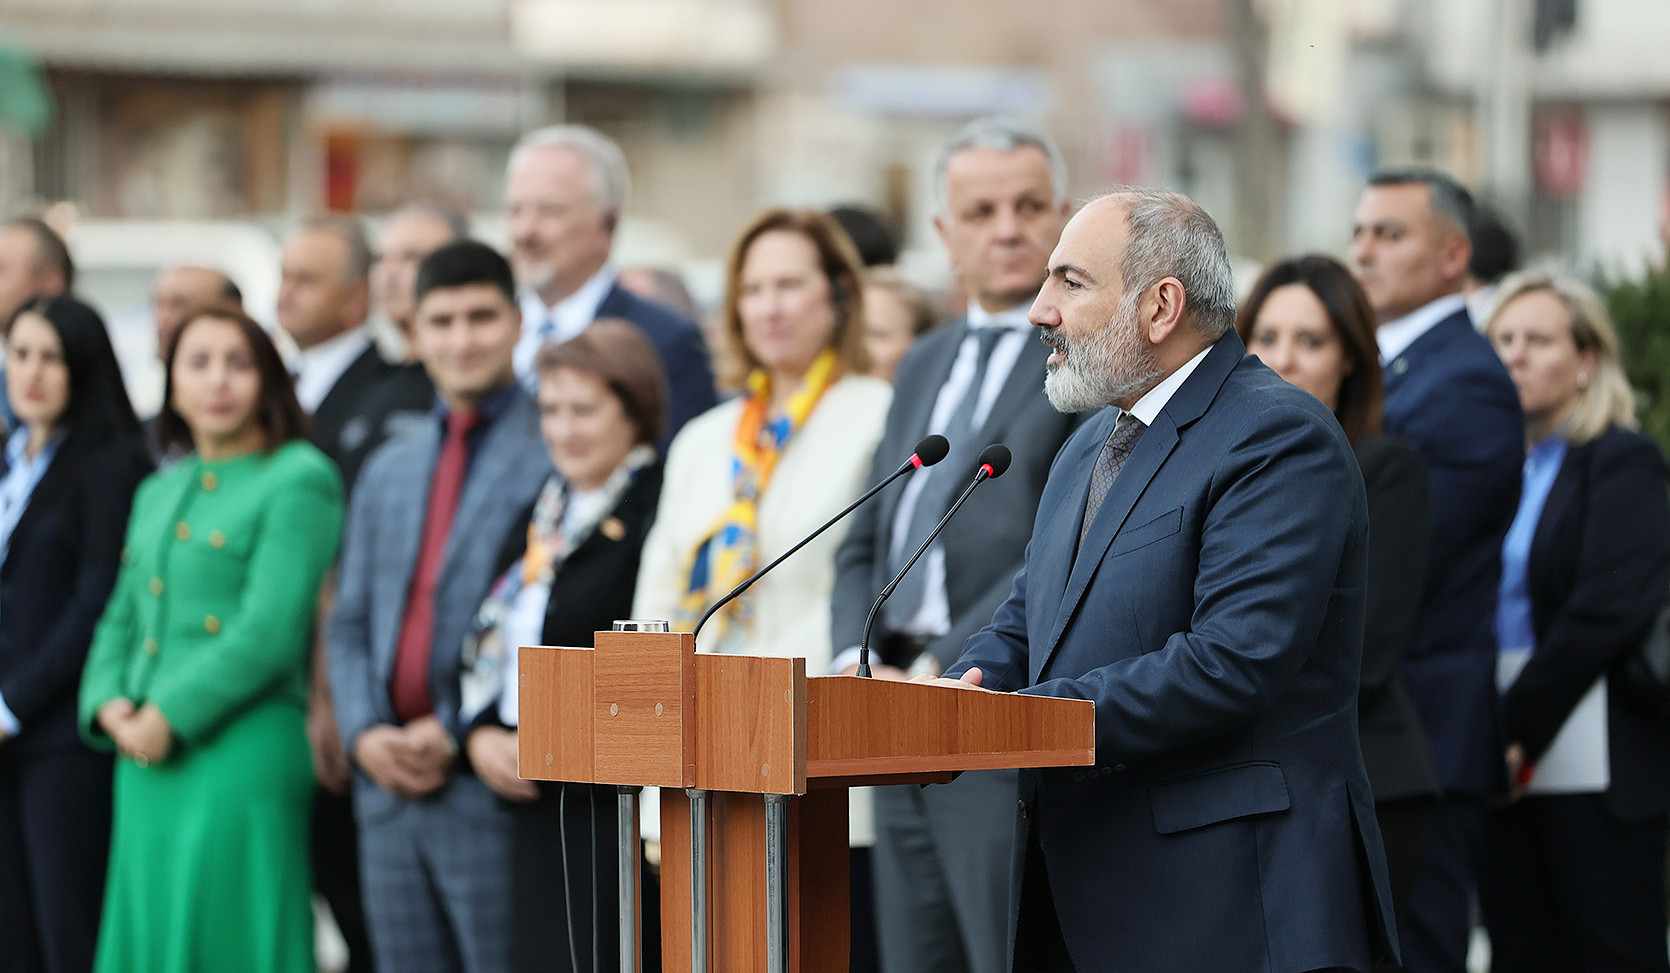 Ոստիկանության բարեփոխումների թիվ մեկ նպատակը Հայաստանի քաղաքացիների իրավունքները, արժանապատվությունը և ազատությունը պաշտպանելն է. վարչապետ